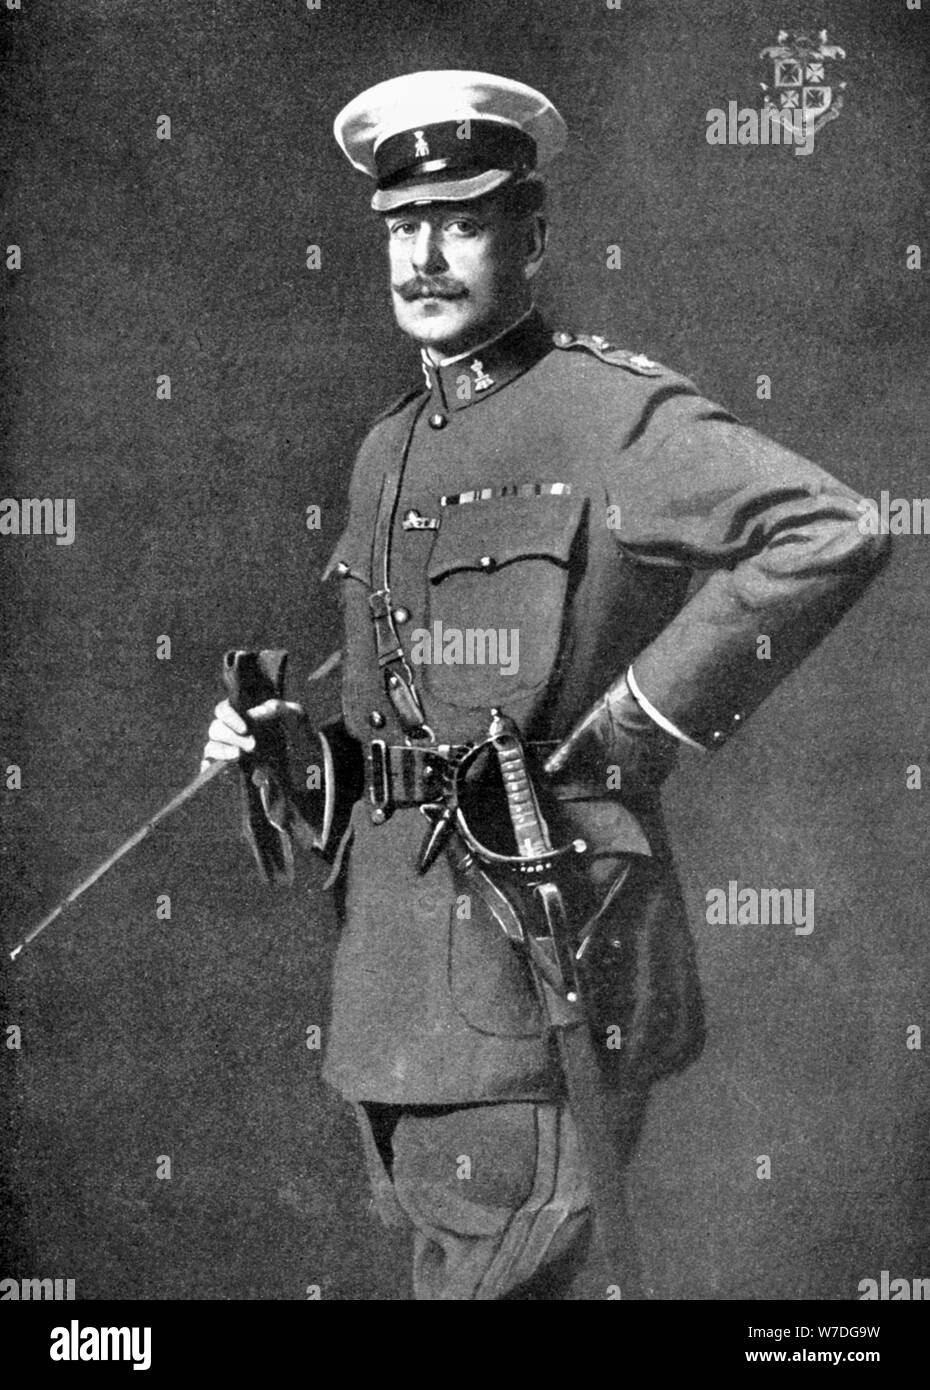 Brigadier-General Sir Philip Chetwode, British soldier, First World War, 1914. Artist: John Saint-Helier Lander Stock Photo